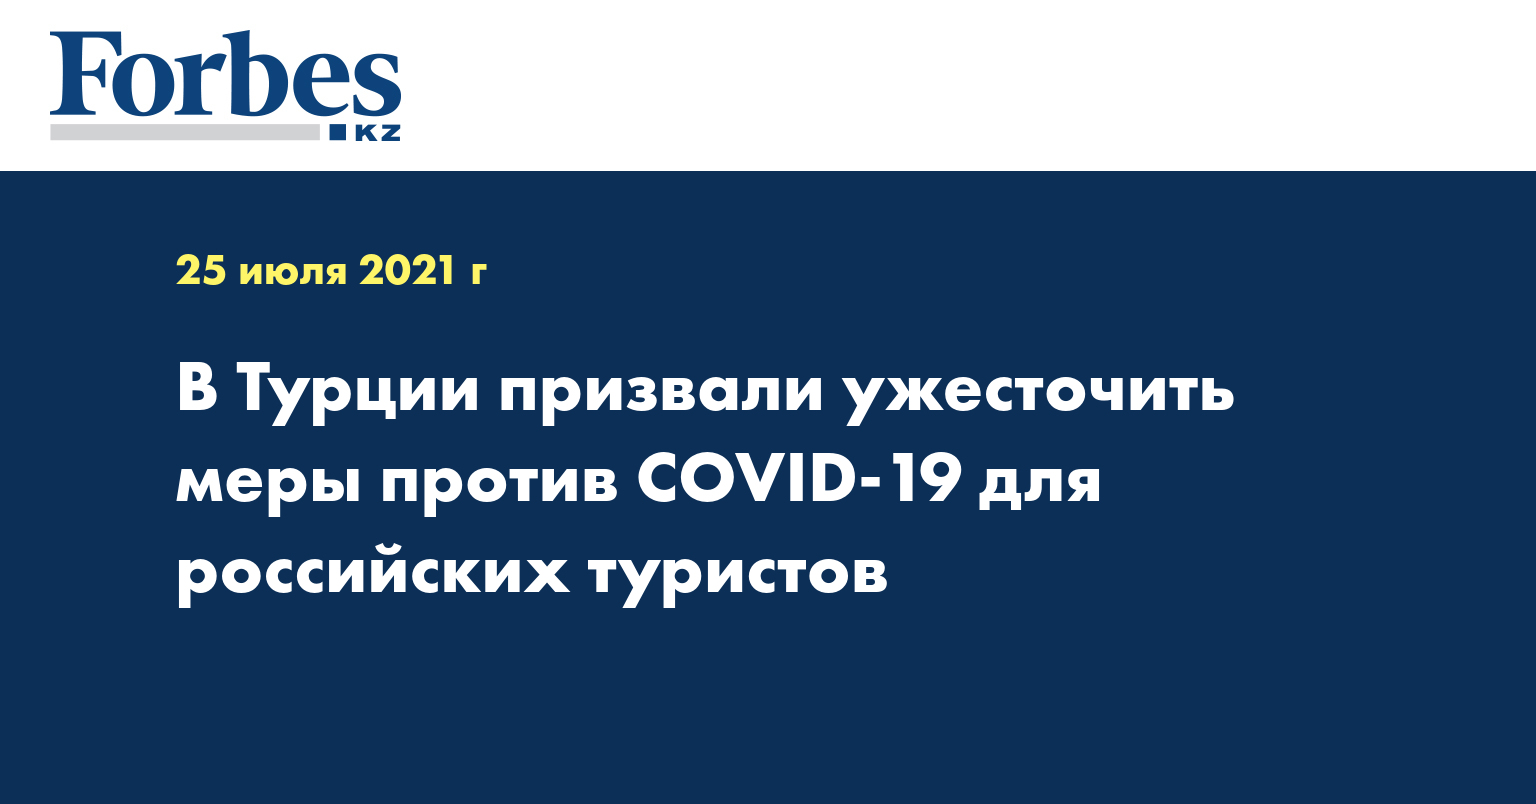 В Турции призвали ужесточить меры против COVID-19 для российских туристов